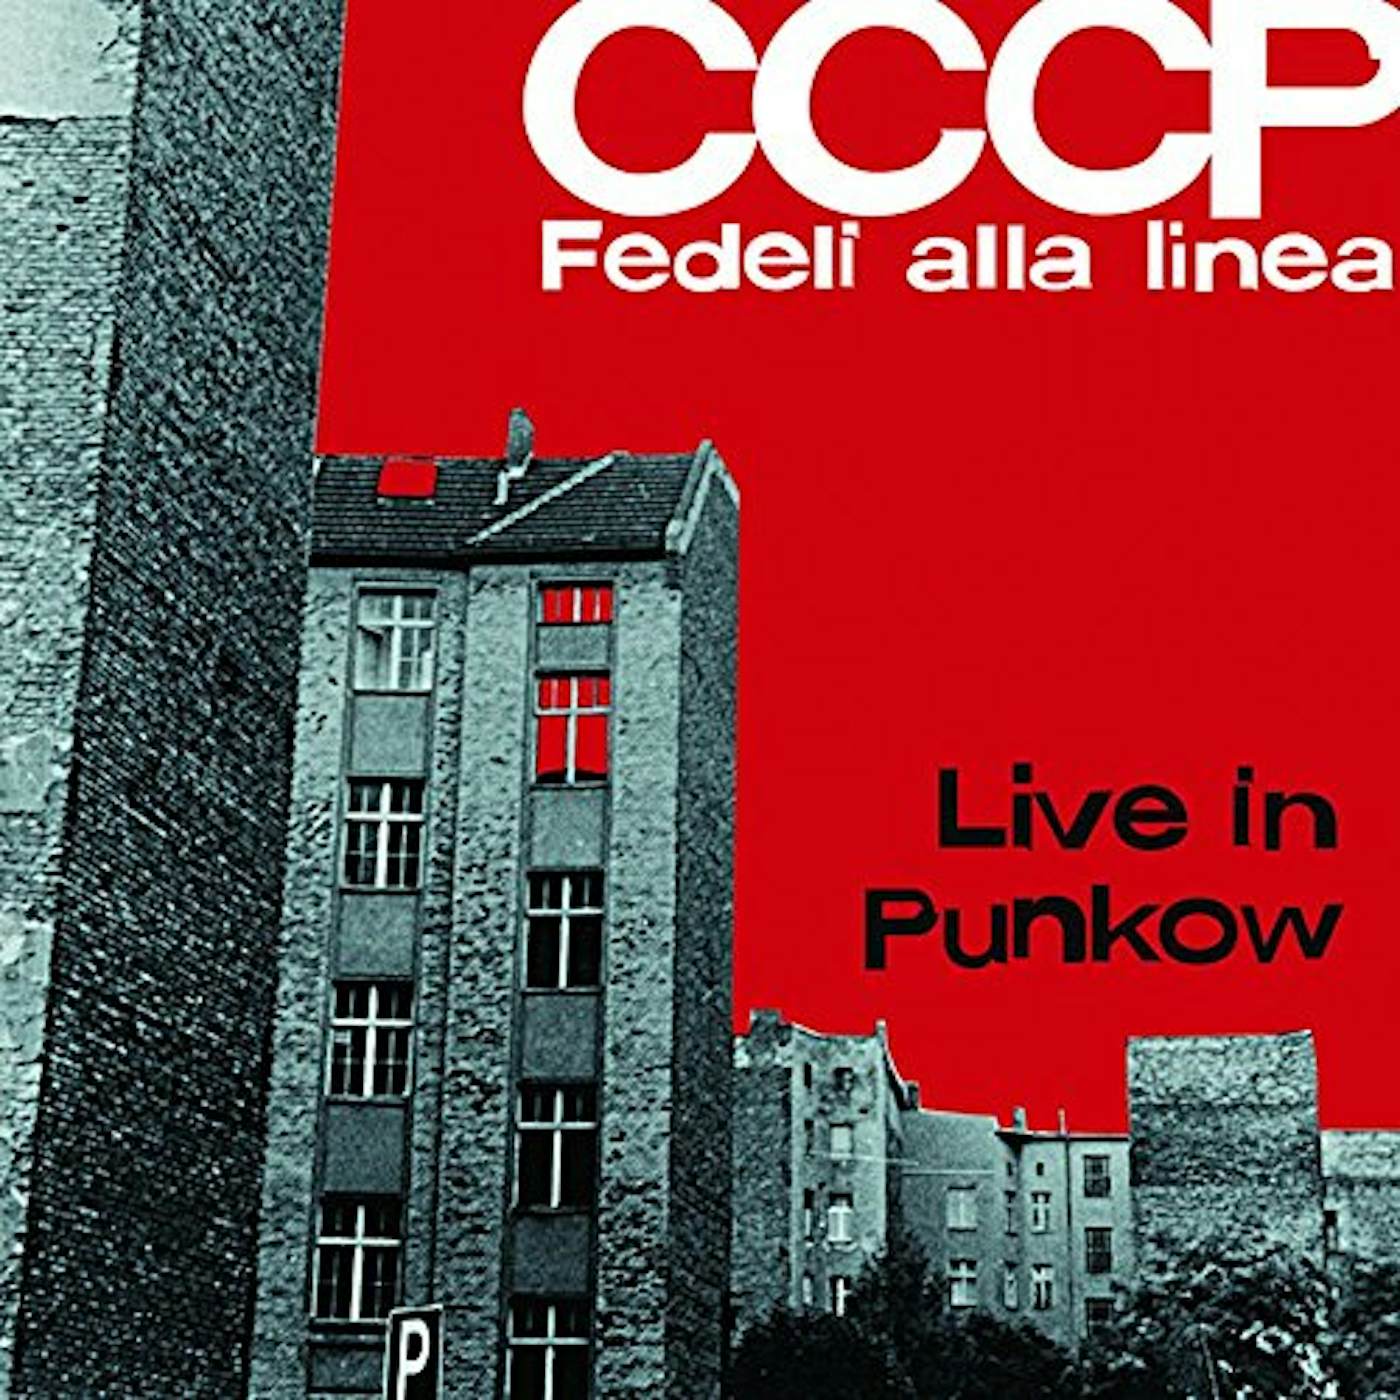 CCCP FEDELI ALLA LINEA Live In Punkow Vinyl Record